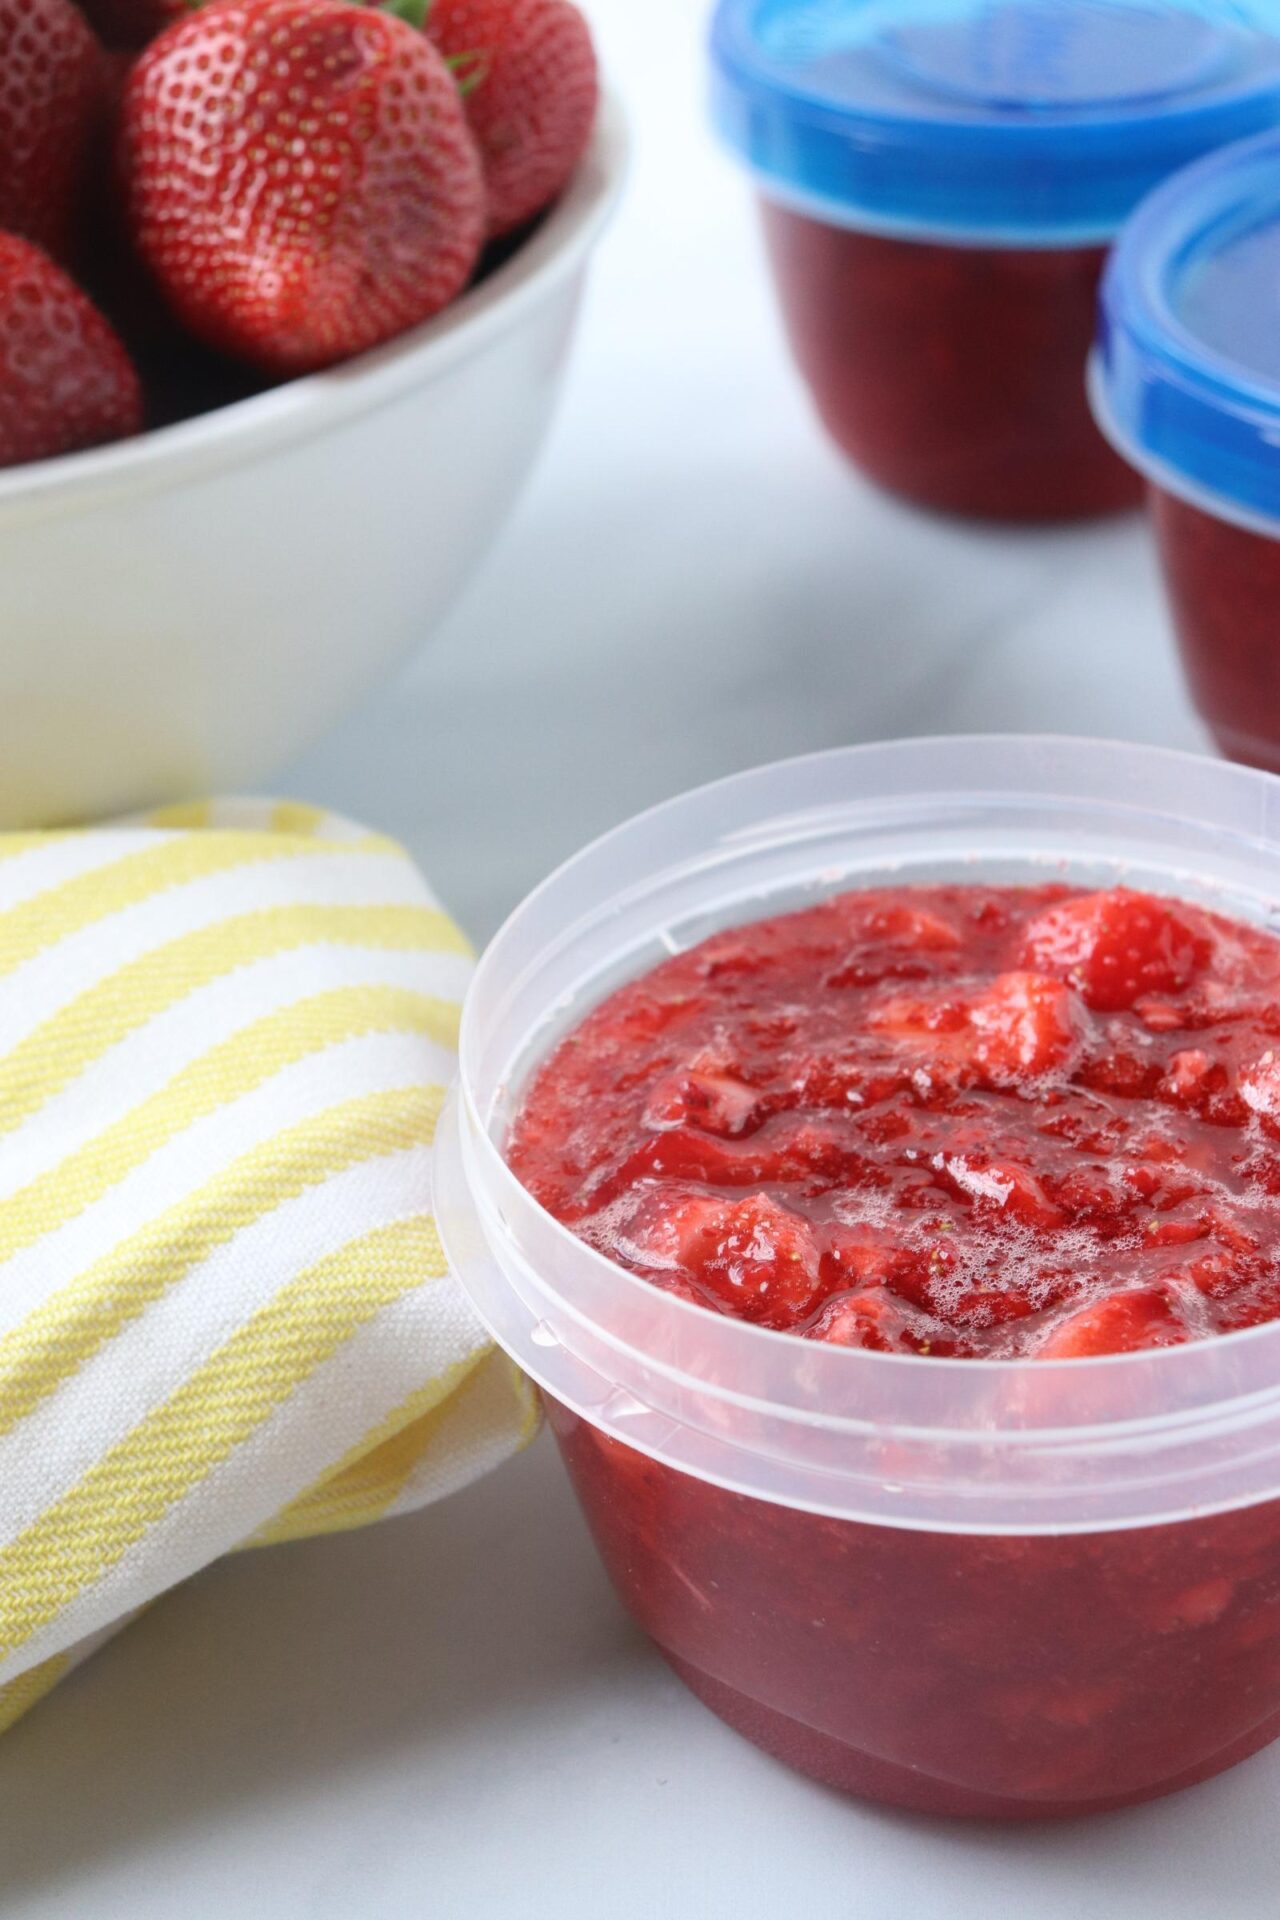 strawberry freezer jam with yellow napkin